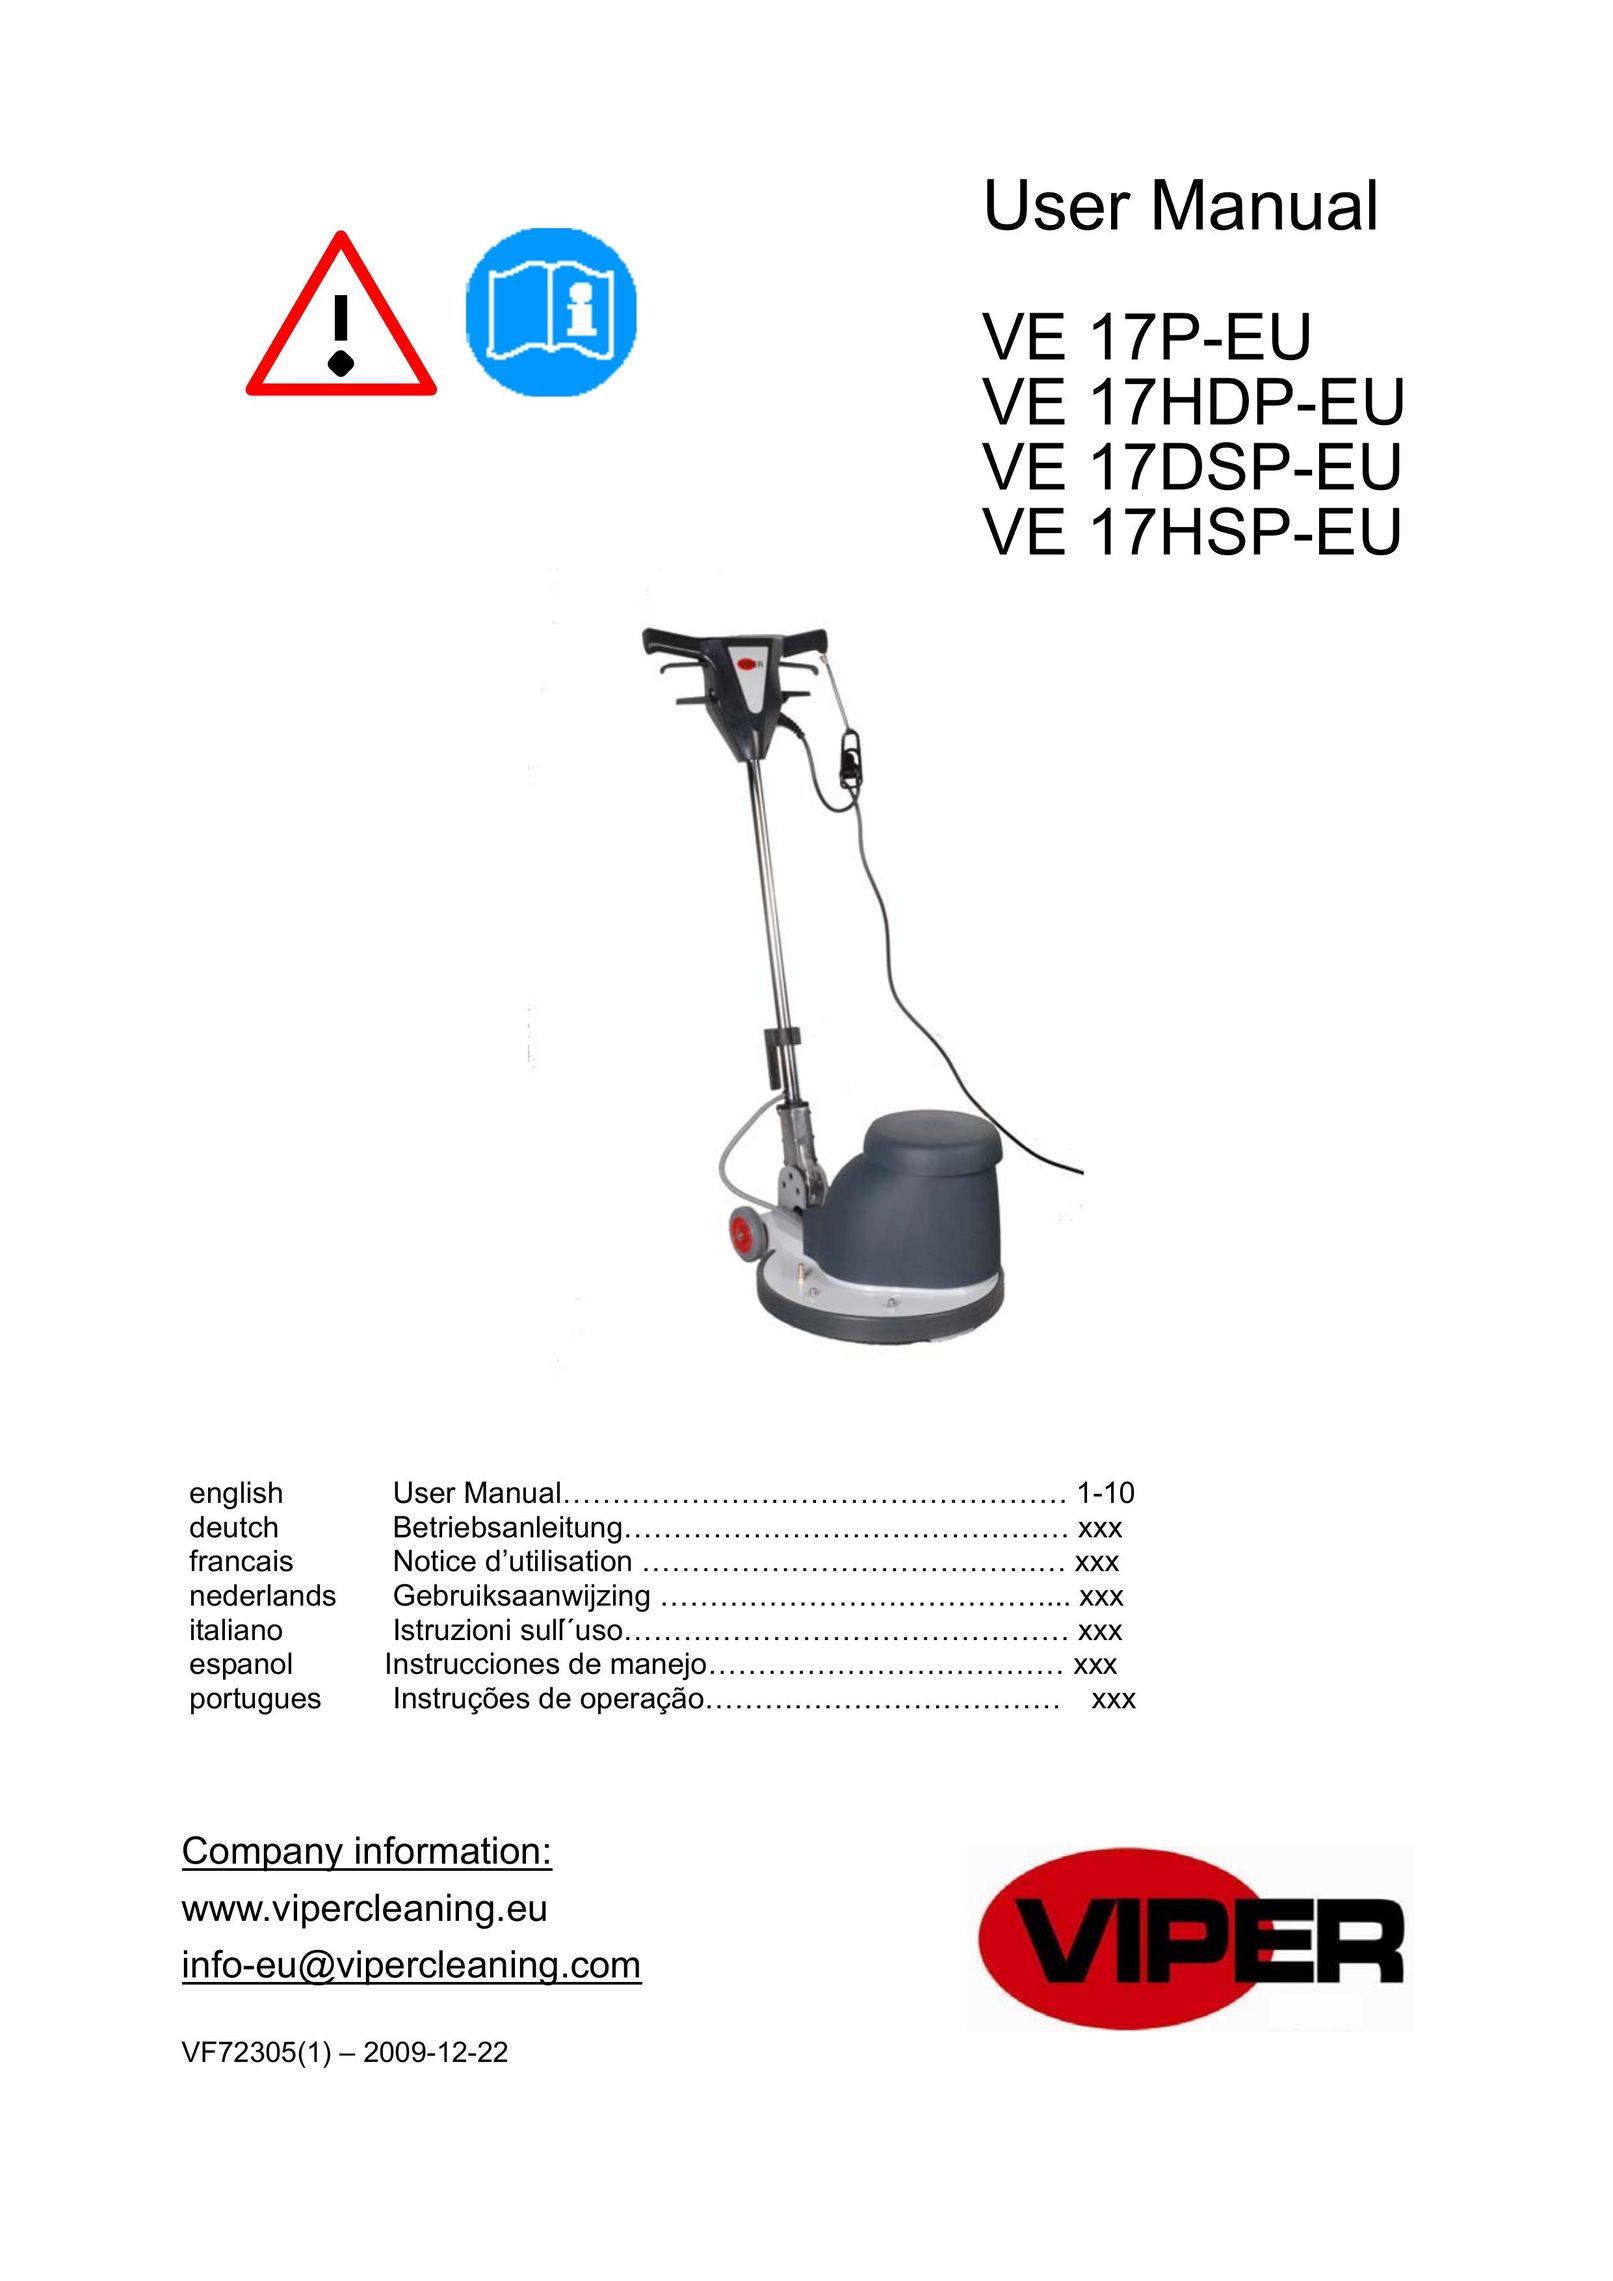 Viper VE 17HDP-EU Vacuum Cleaner User Manual